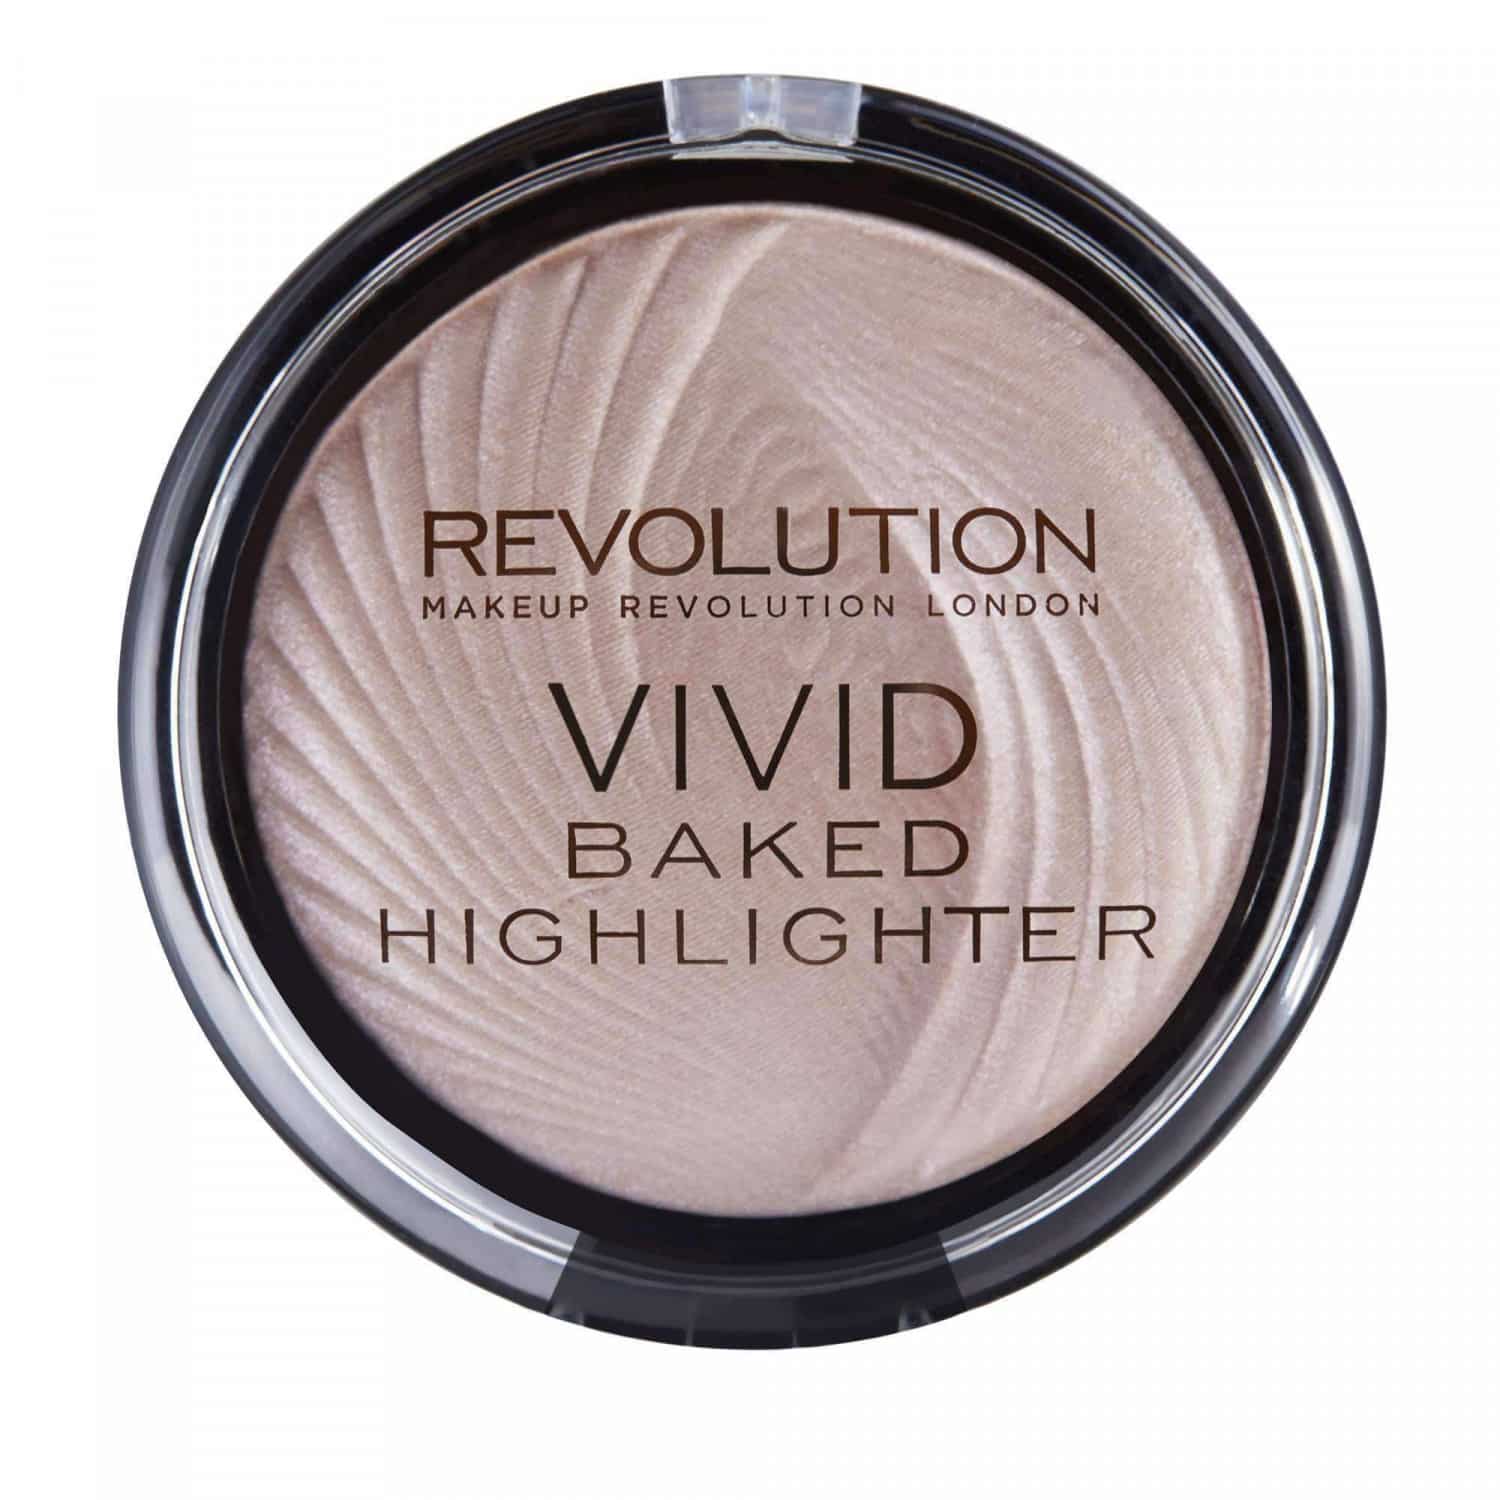 Makeup Revolution Vivid Baked Highlighter